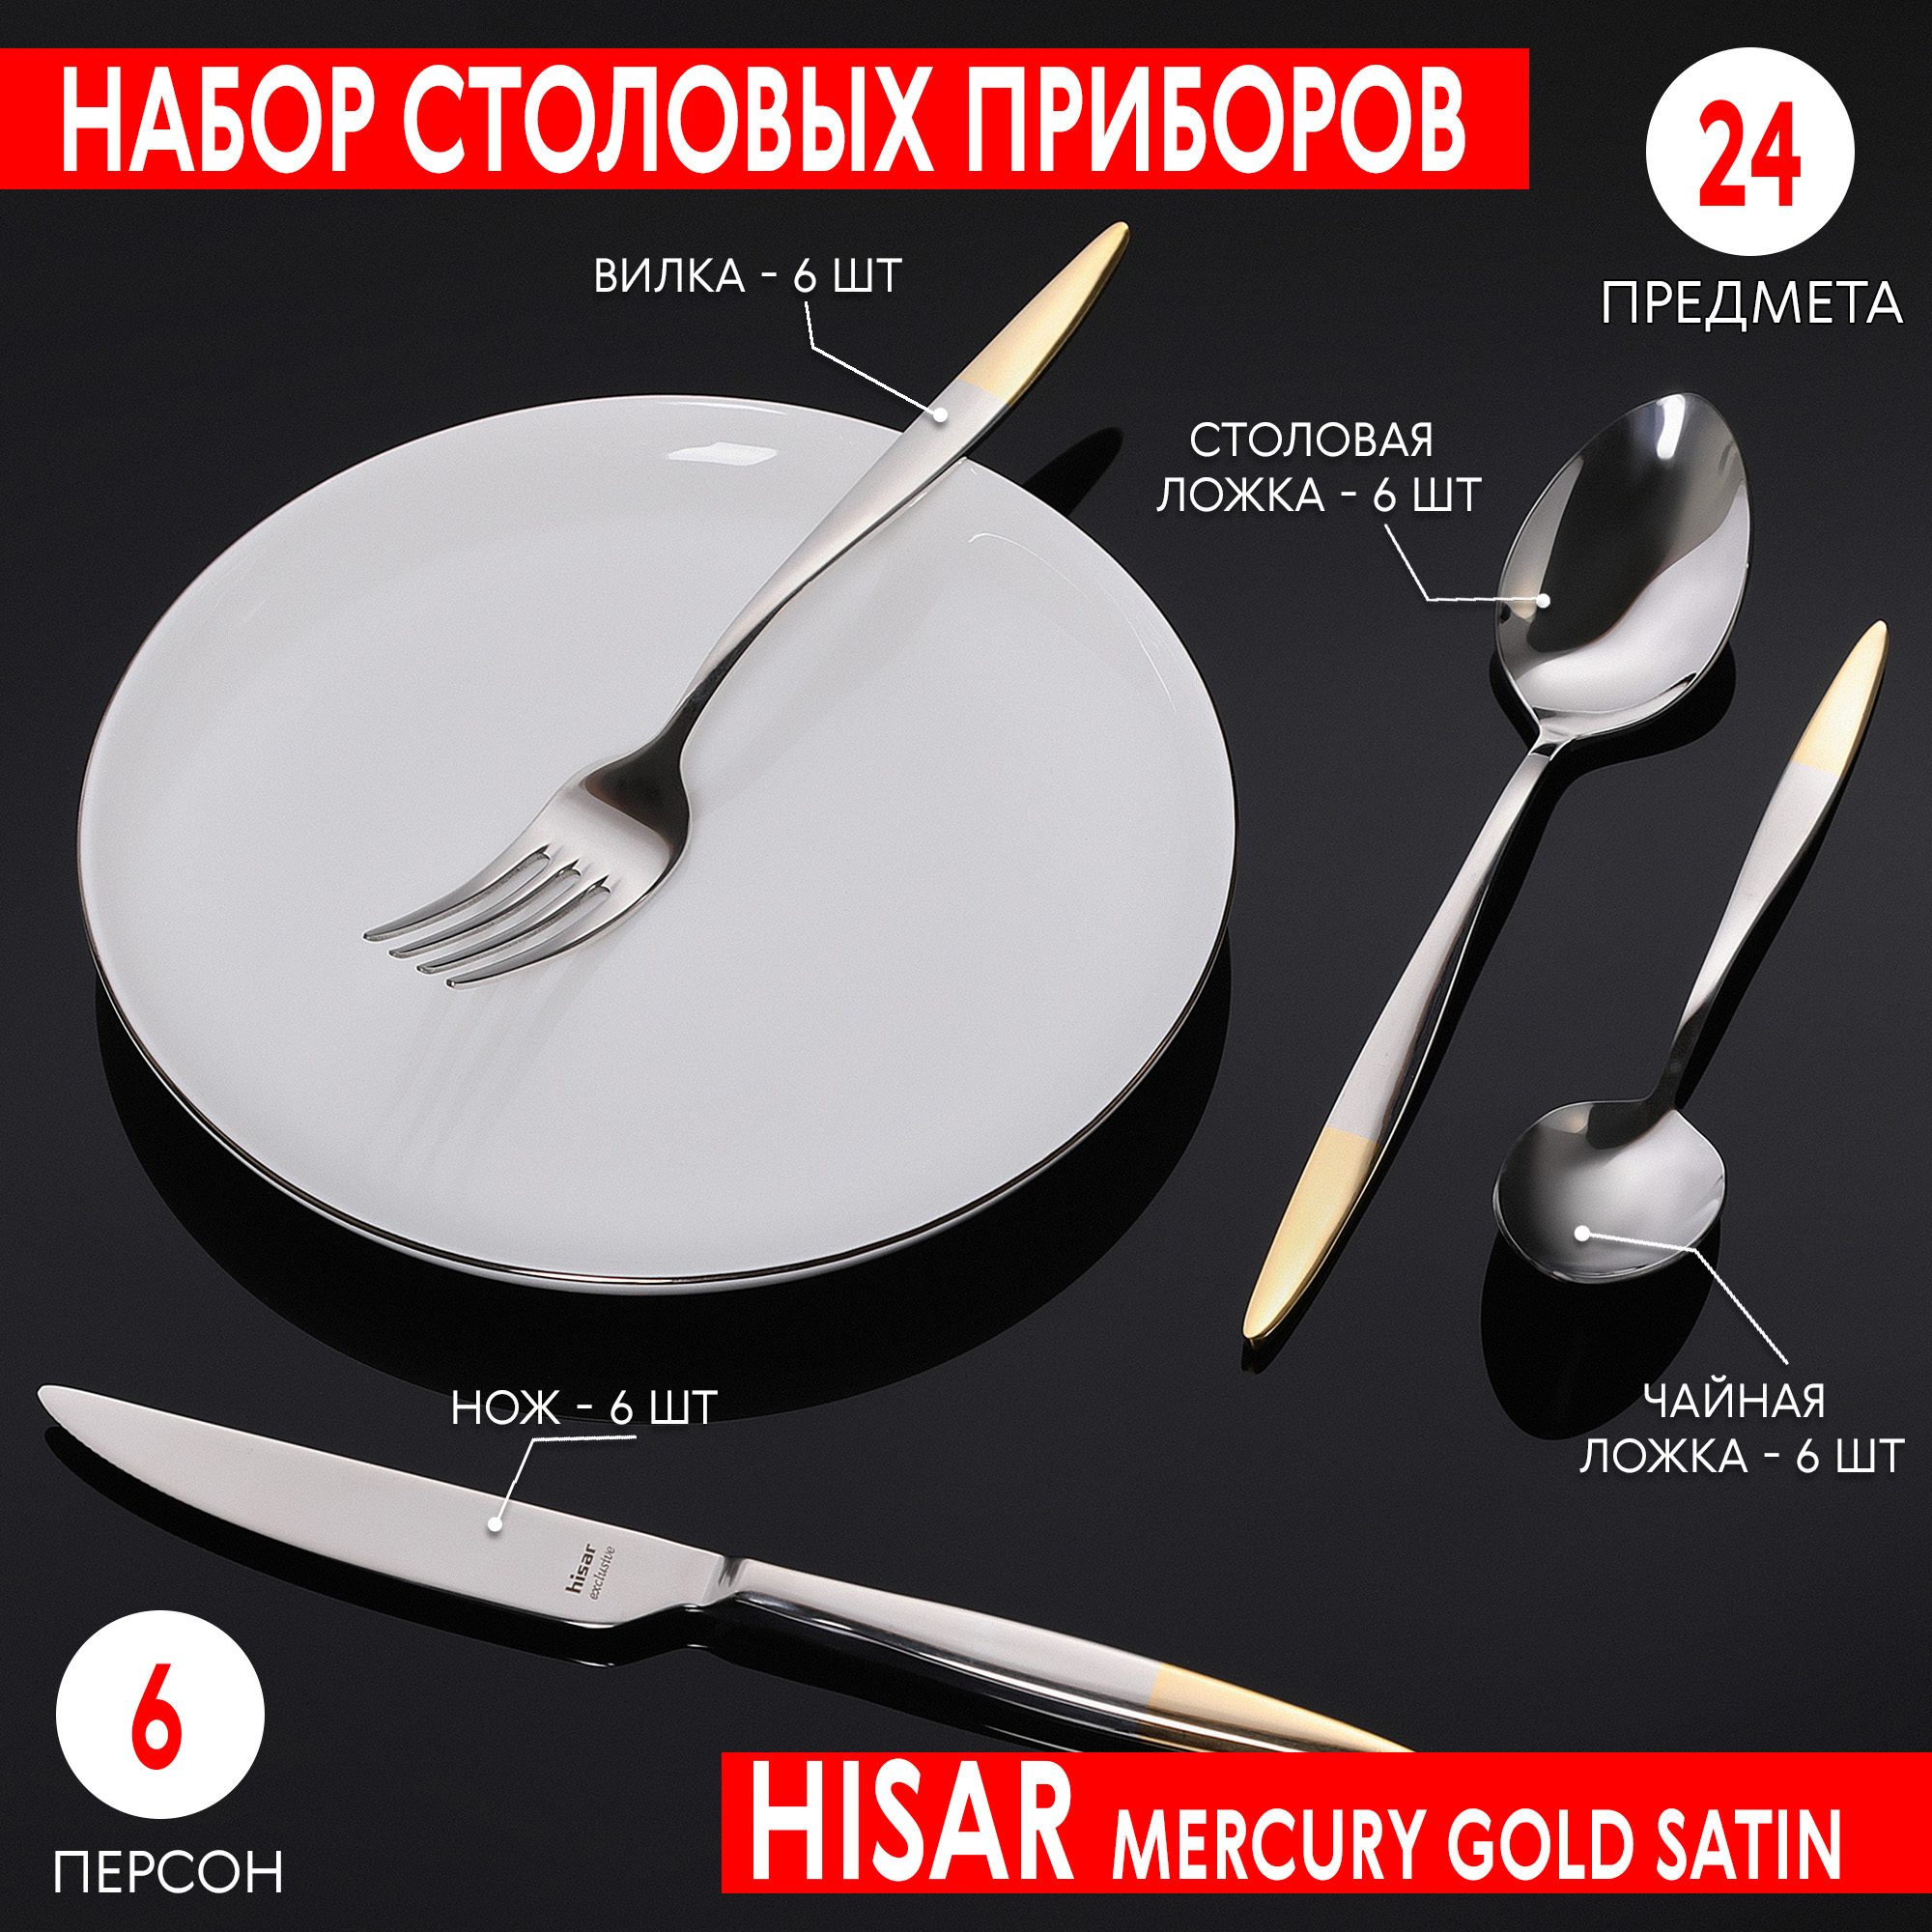 Набор столовых приборов Hisar Mercury gold satin 6 персон 24 предмета, цвет серебристый - фото 2